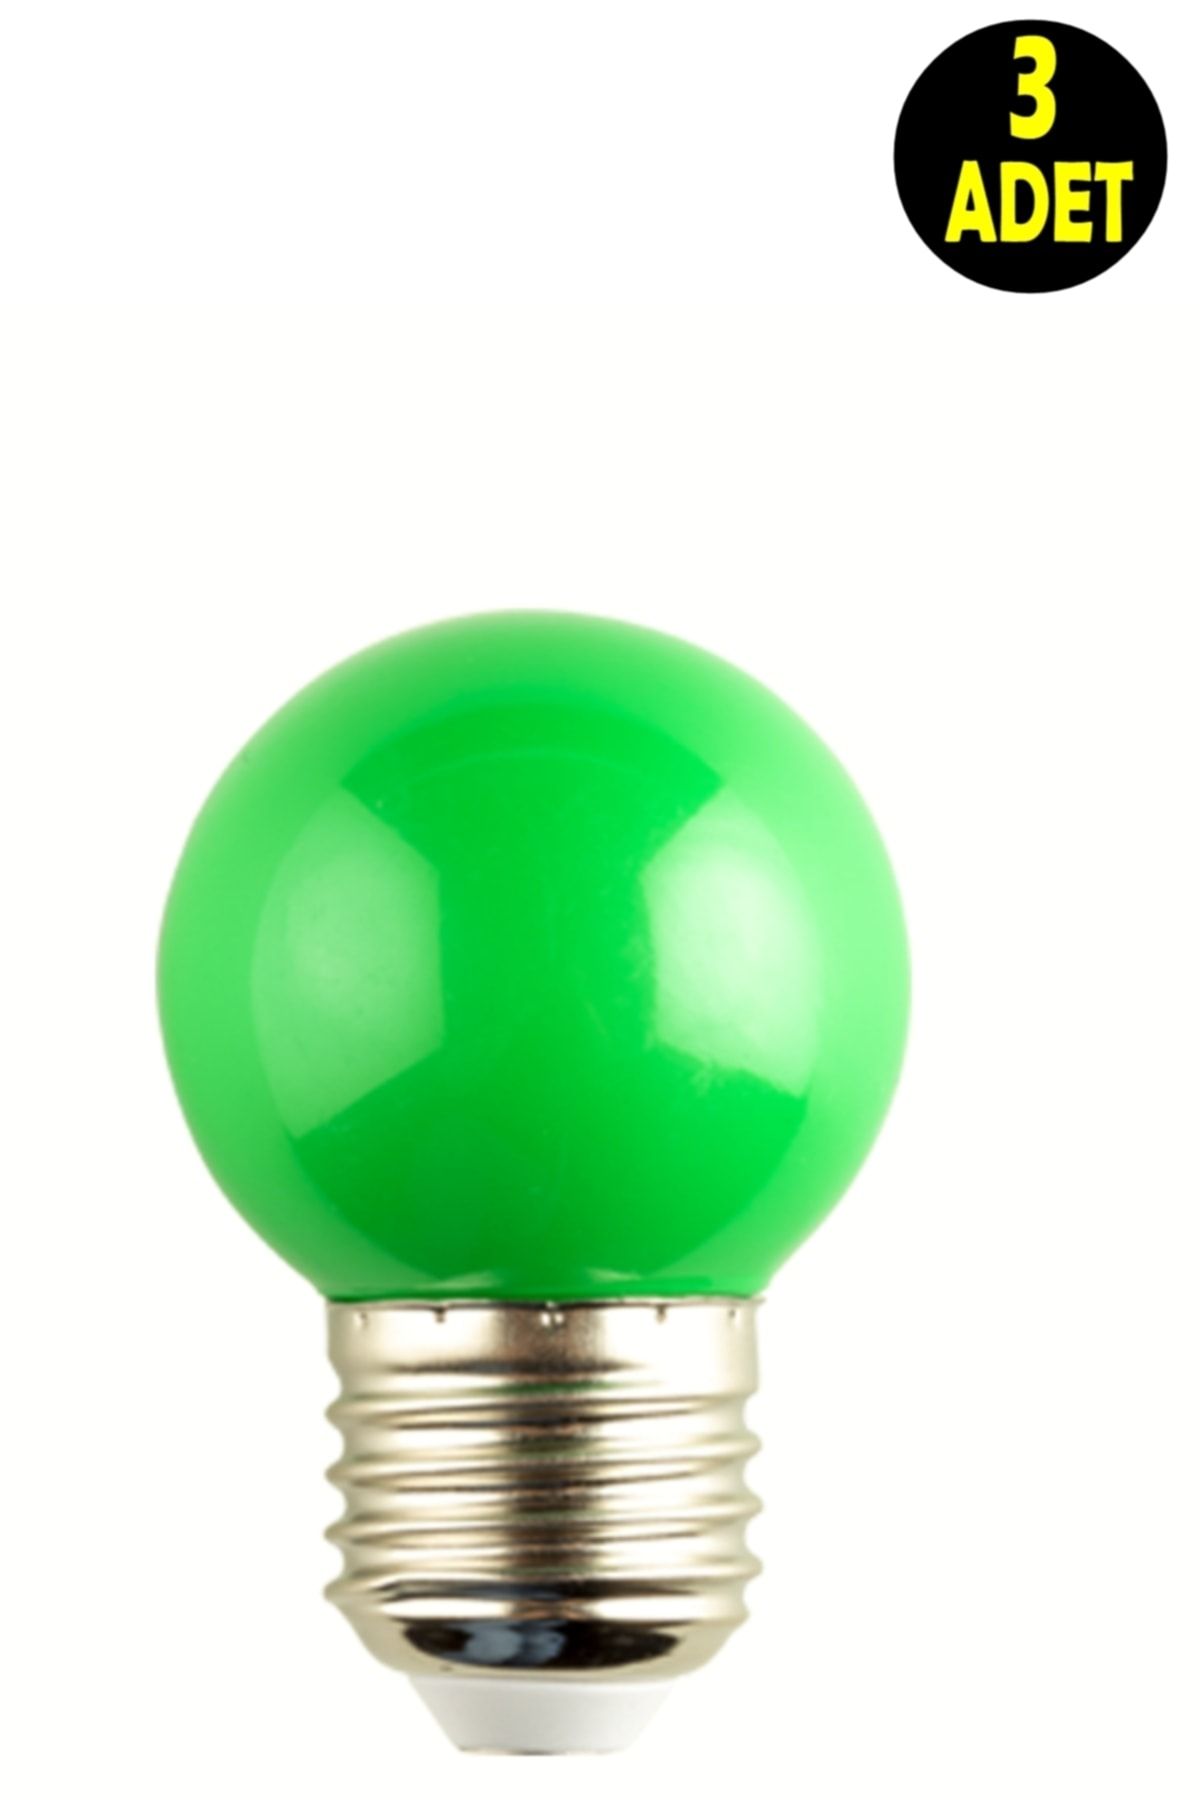 usin 3 Adet Yeşil Işık Enerji Tasarruflu Renkli Led Gece Lambası Ampulu